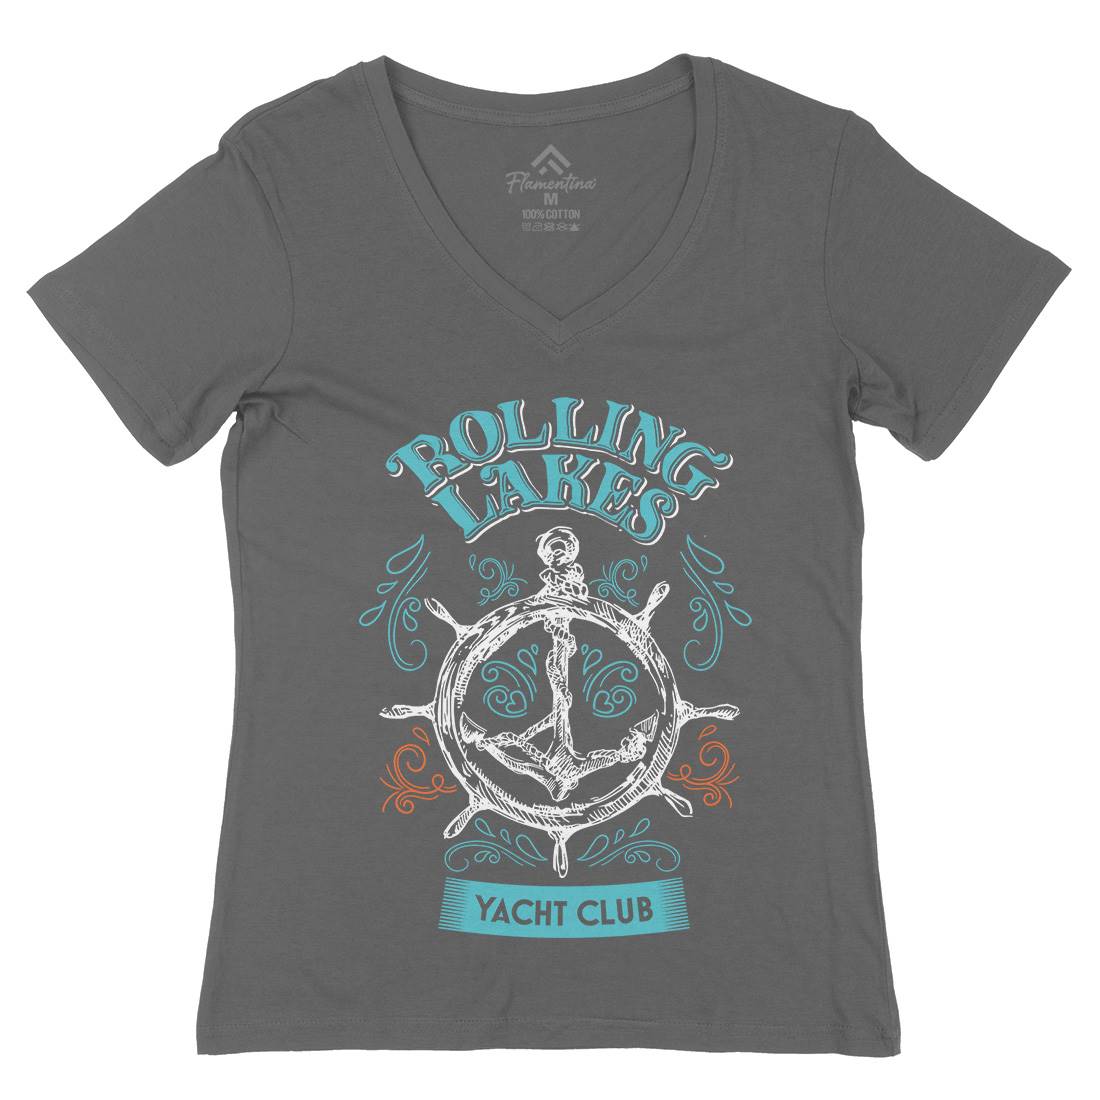 Rolling Lakes Yacht Club Womens Organic V-Neck T-Shirt Horror D252